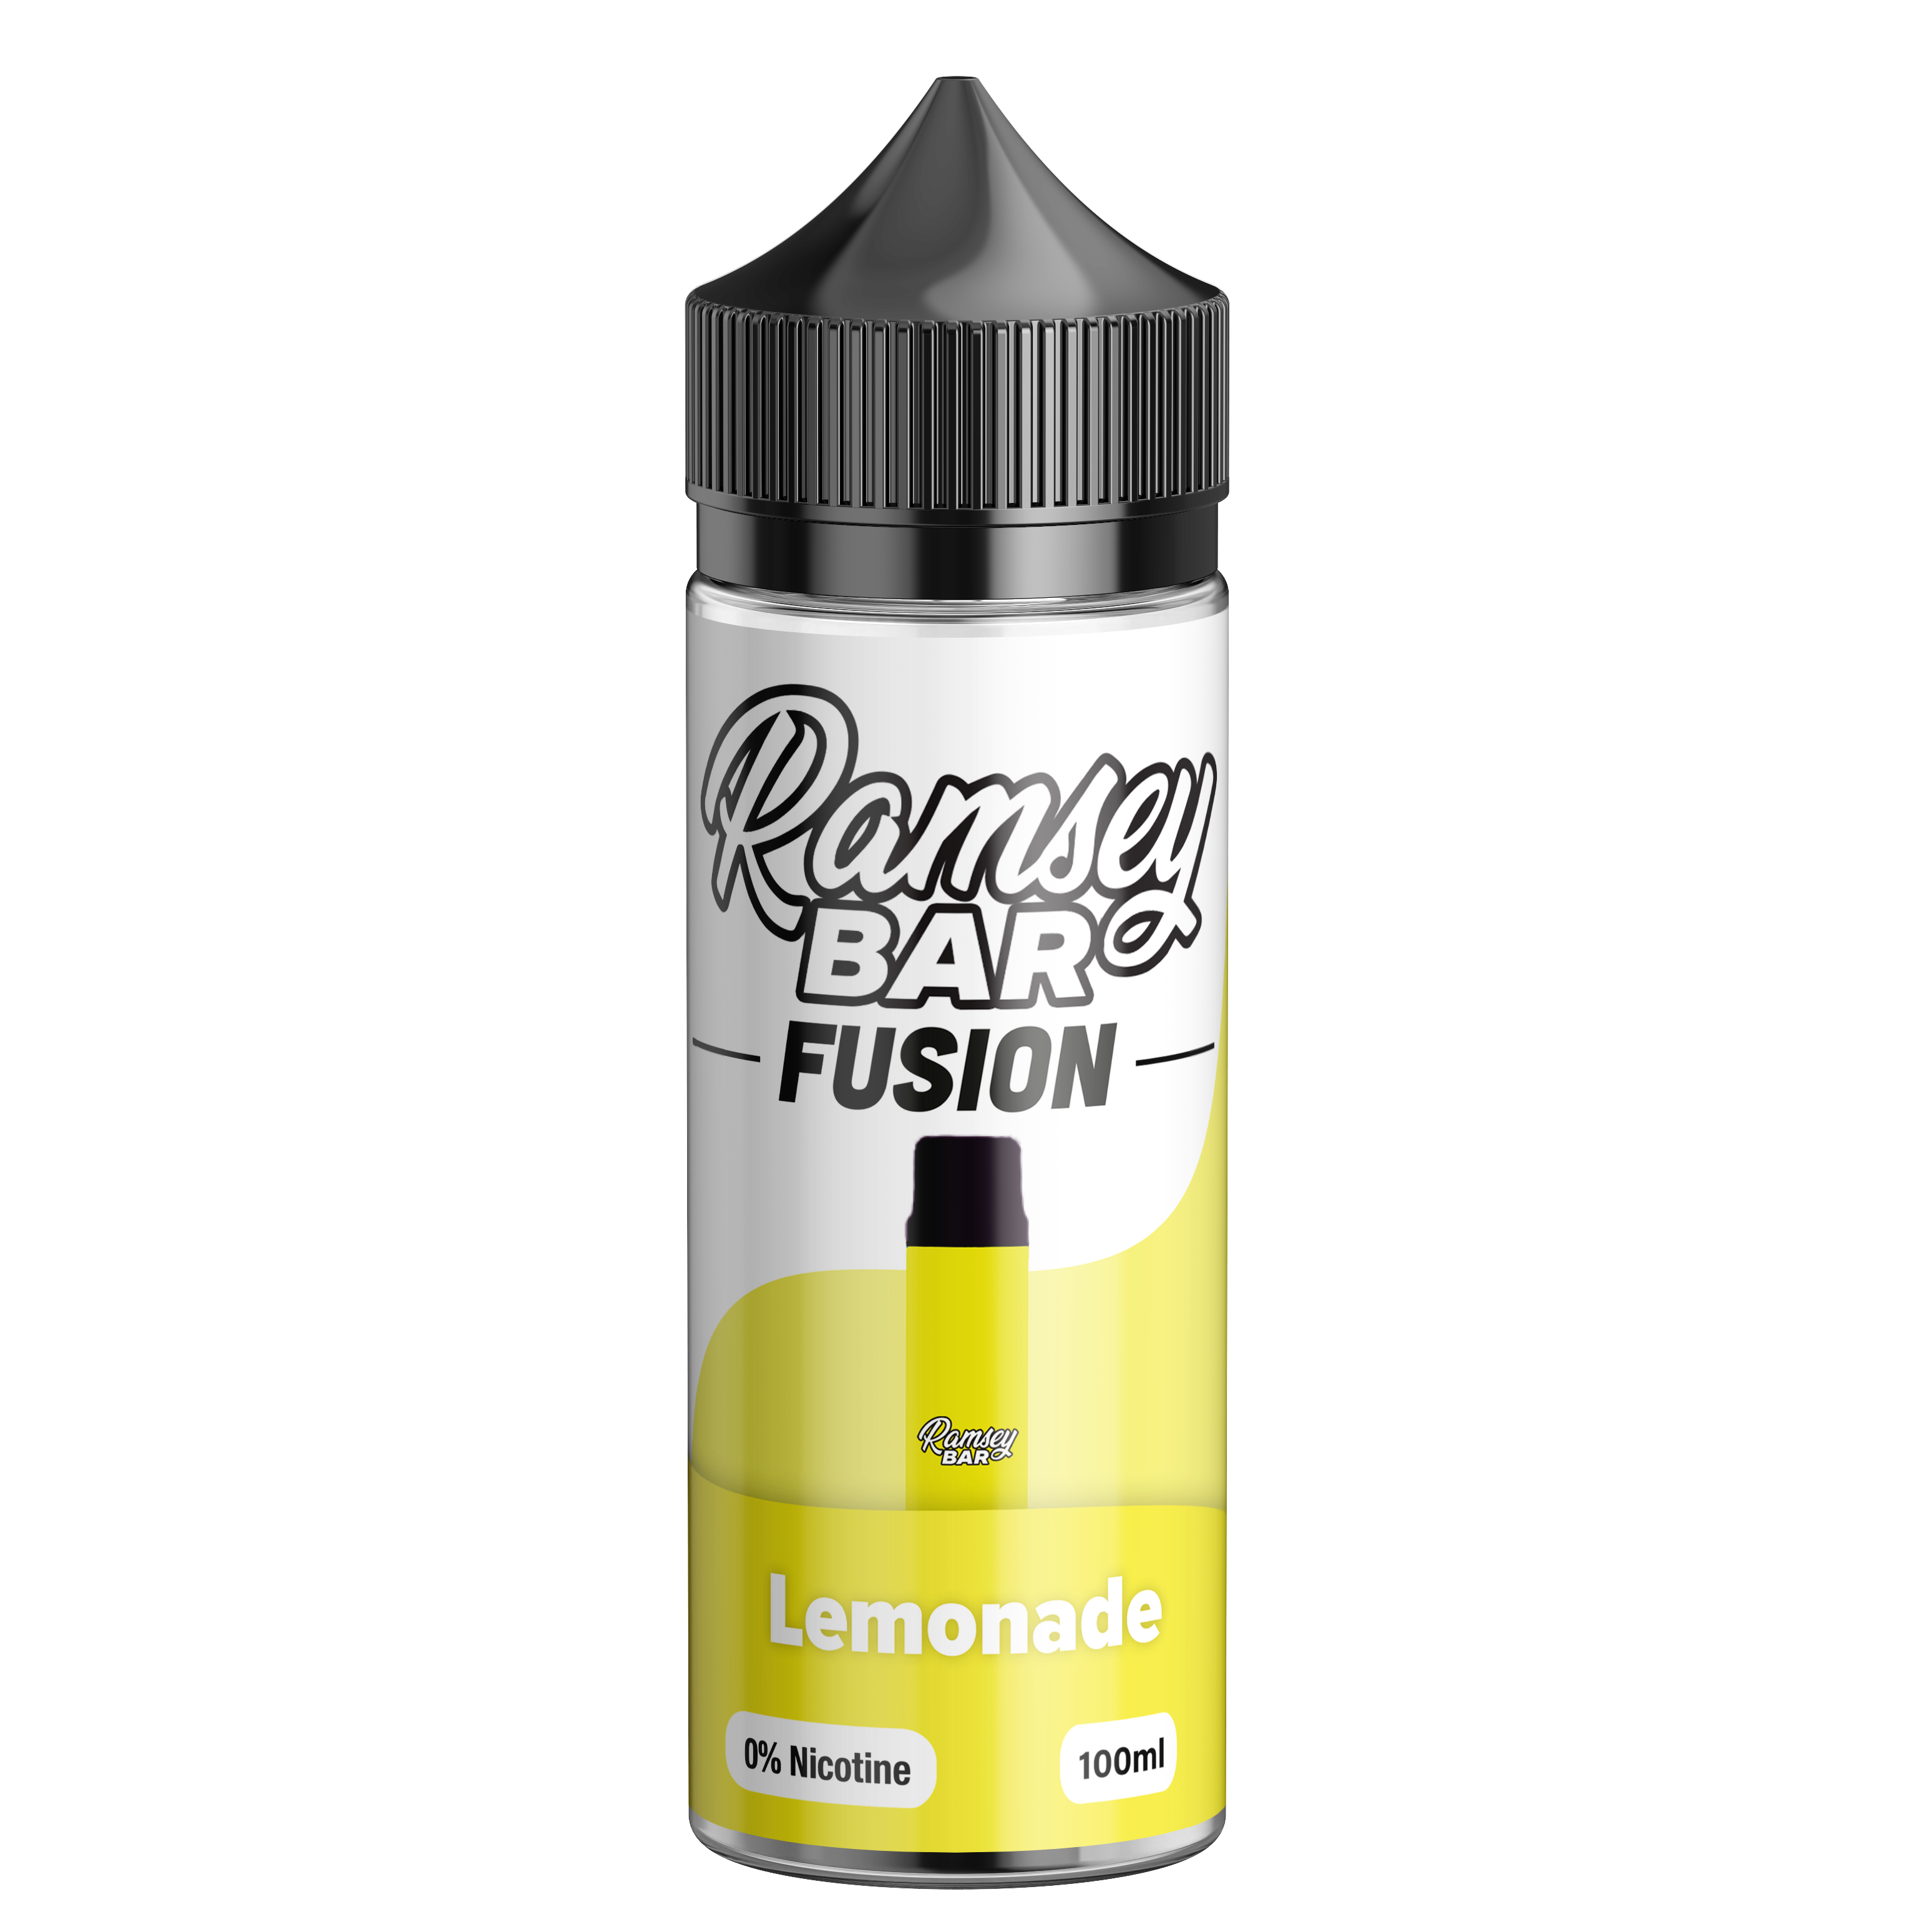 Ramsey Bar Fusion Lemonade 100ml Shortfill E-Liquid